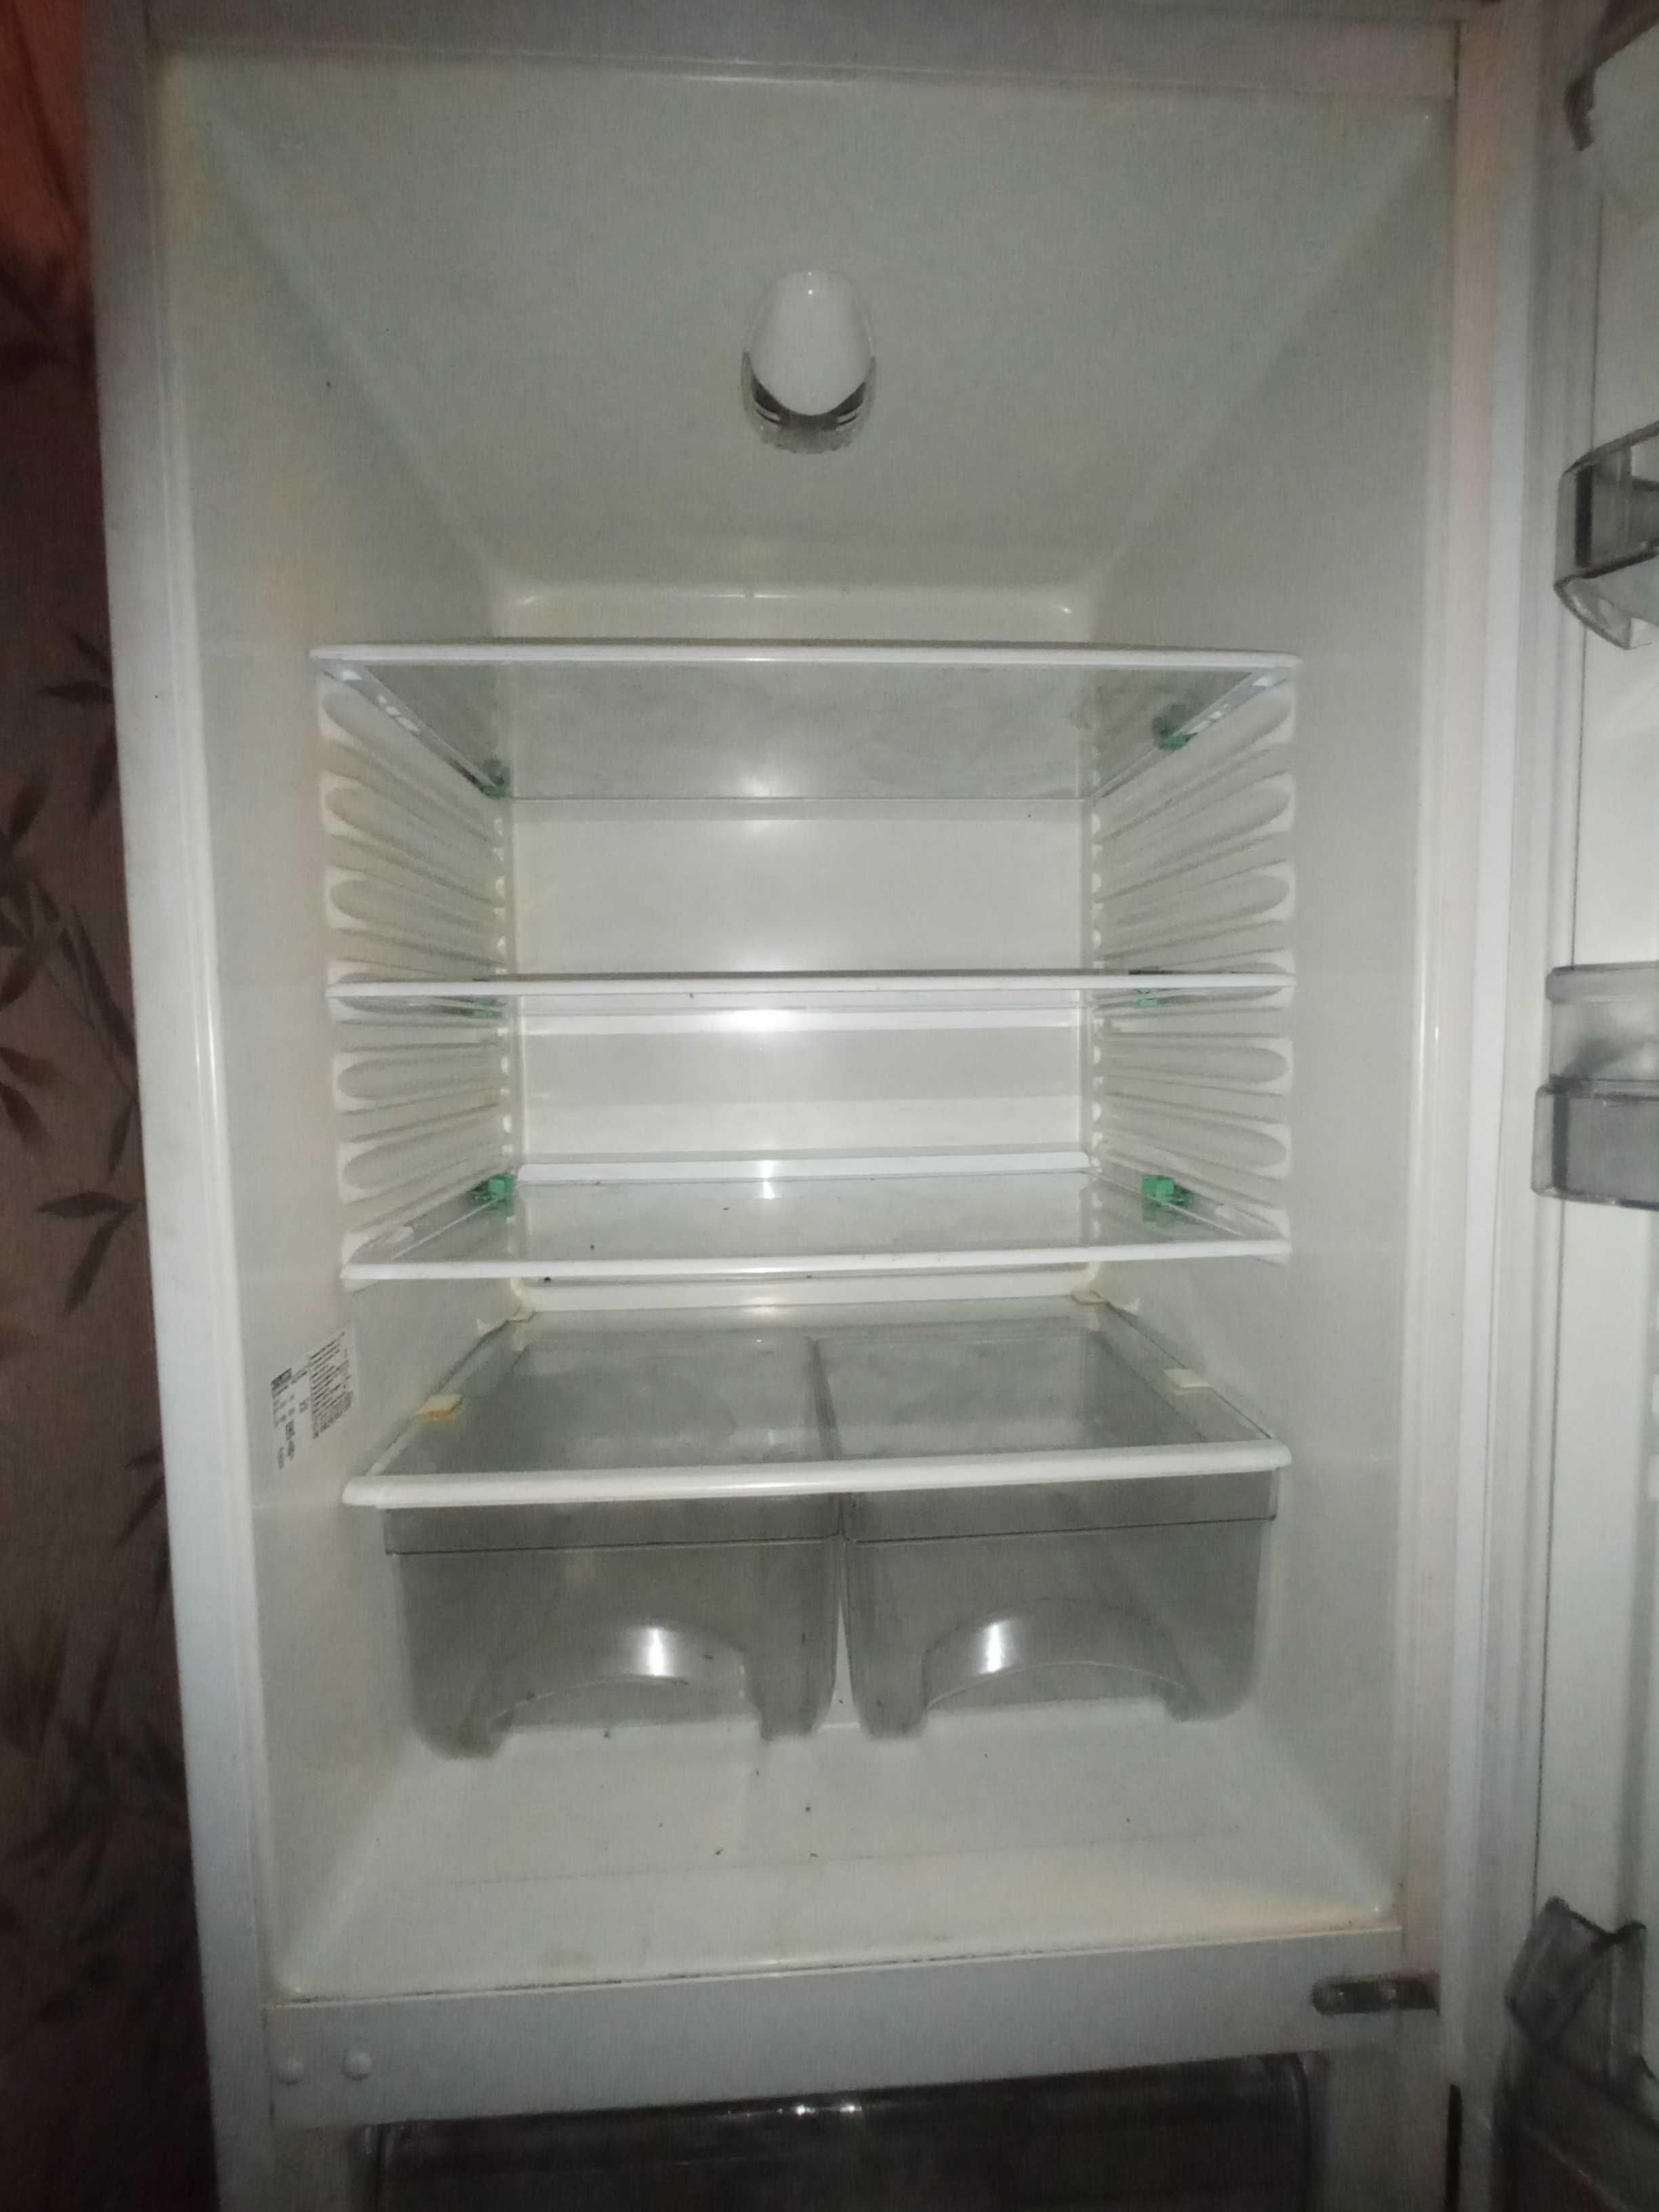 Продам холодильник,в хорошем состоянии